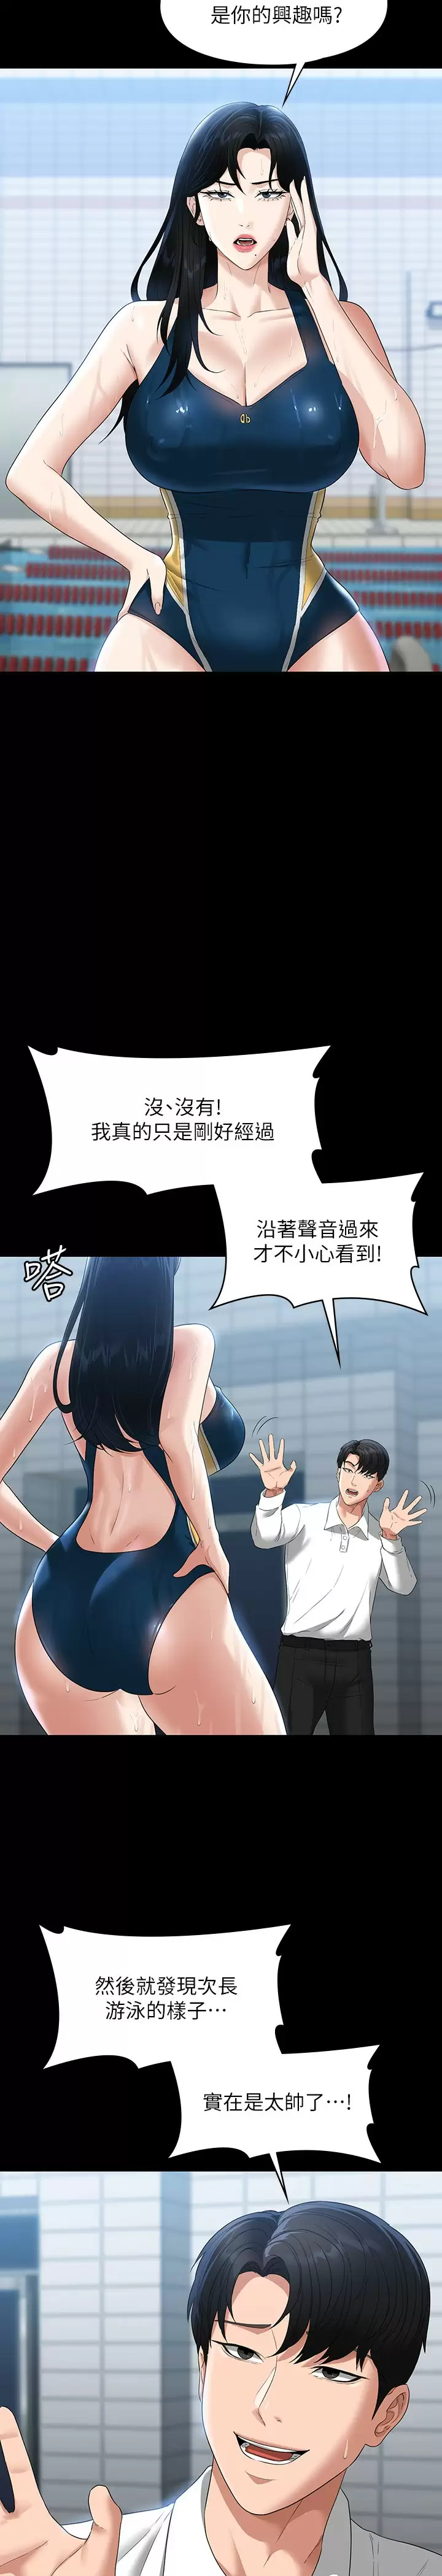 韩国污漫画 超級公務員 第48话 吴悠秀次长不科学的身材 15